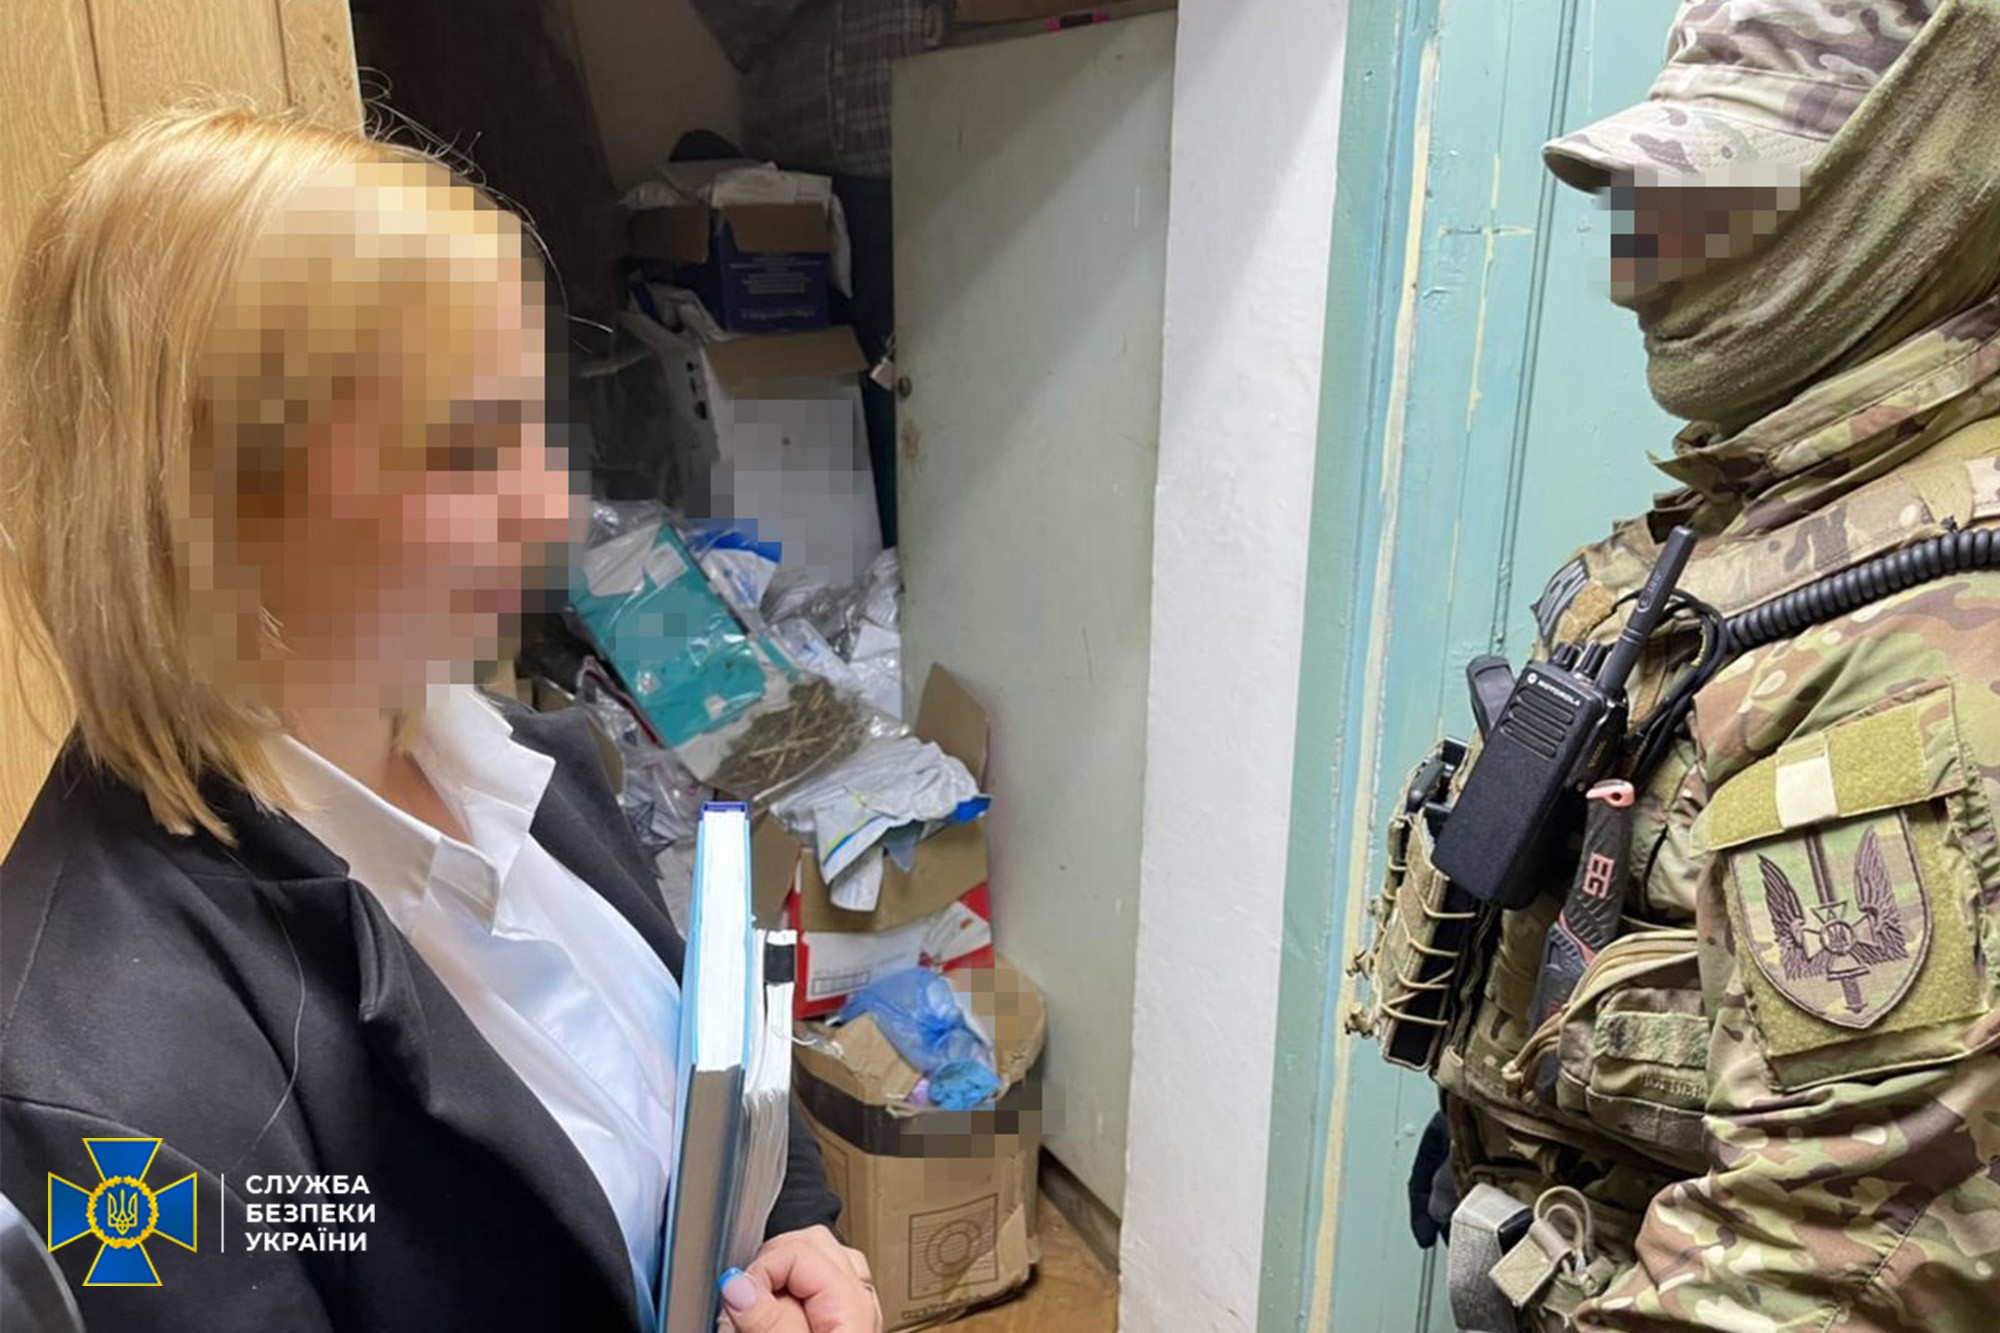 В Одесской области сотрудница полиции воровала из вещдоков наркотики и продавала их